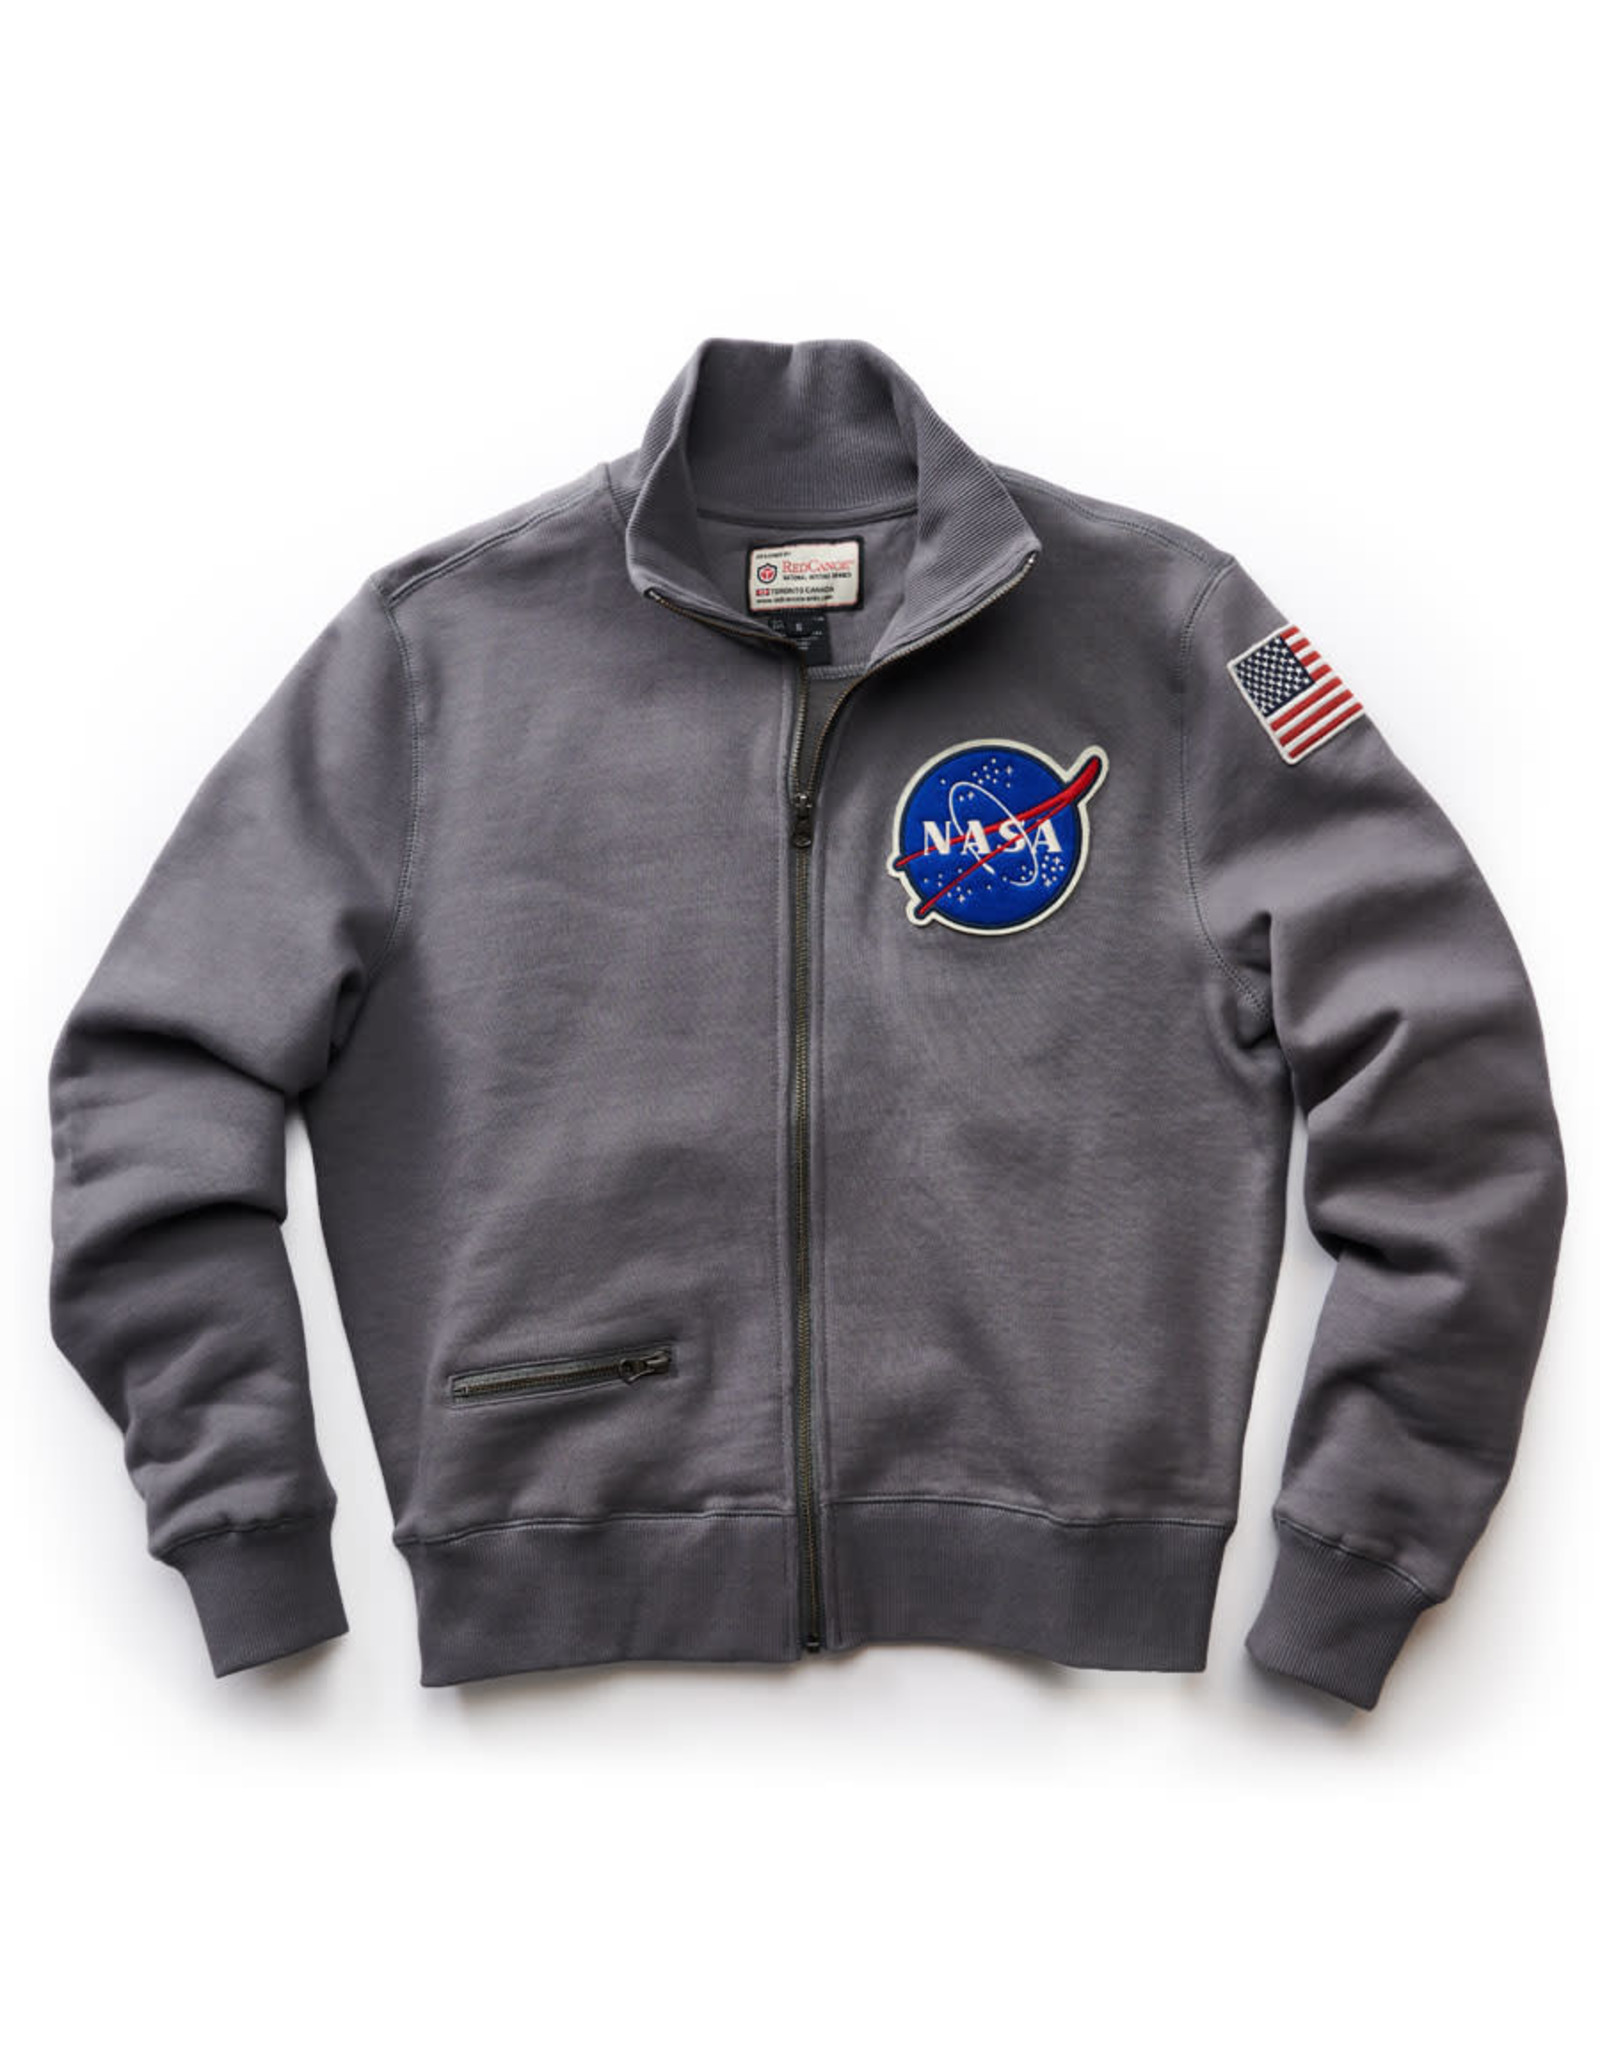 Nasa Rocket Scientist Full Zip Sweatshirt